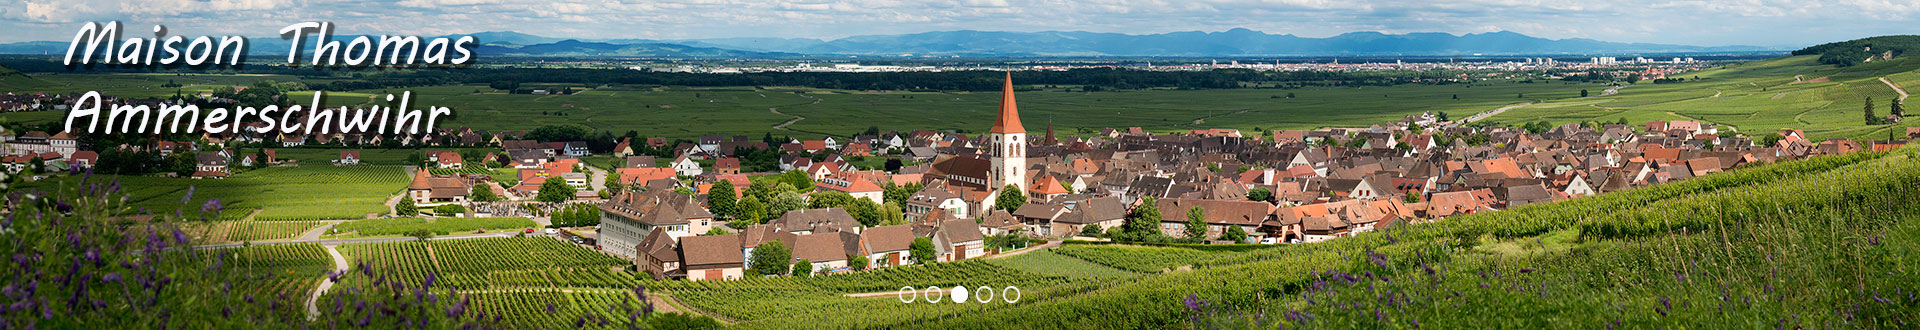 le village d'Ammerschwihr